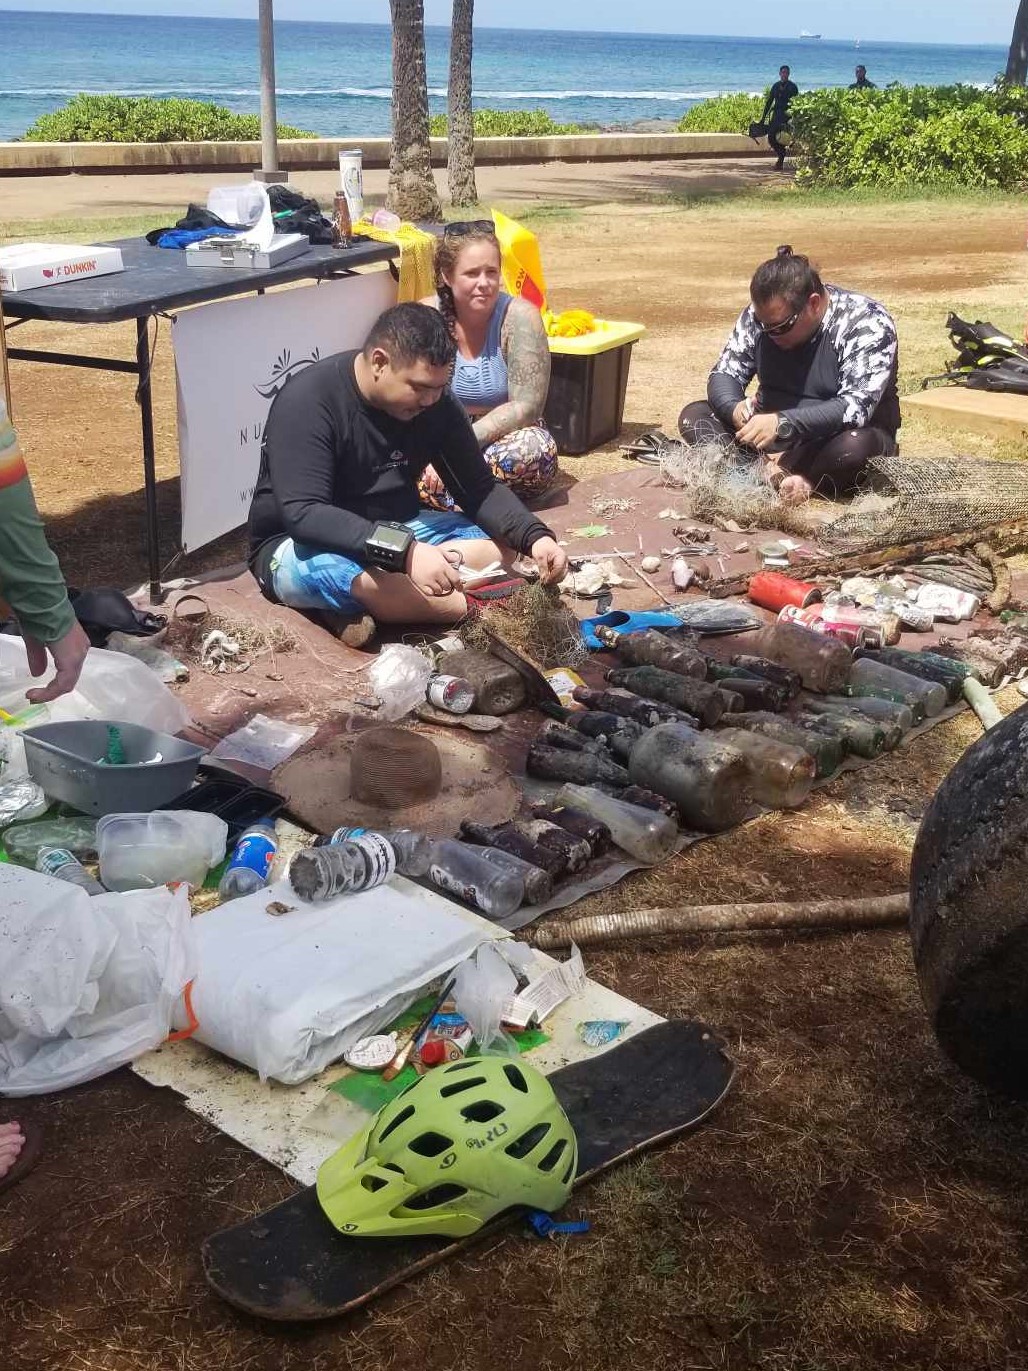 Nudi Wear volunteers sorting debris removed from the ocean in Hawaii